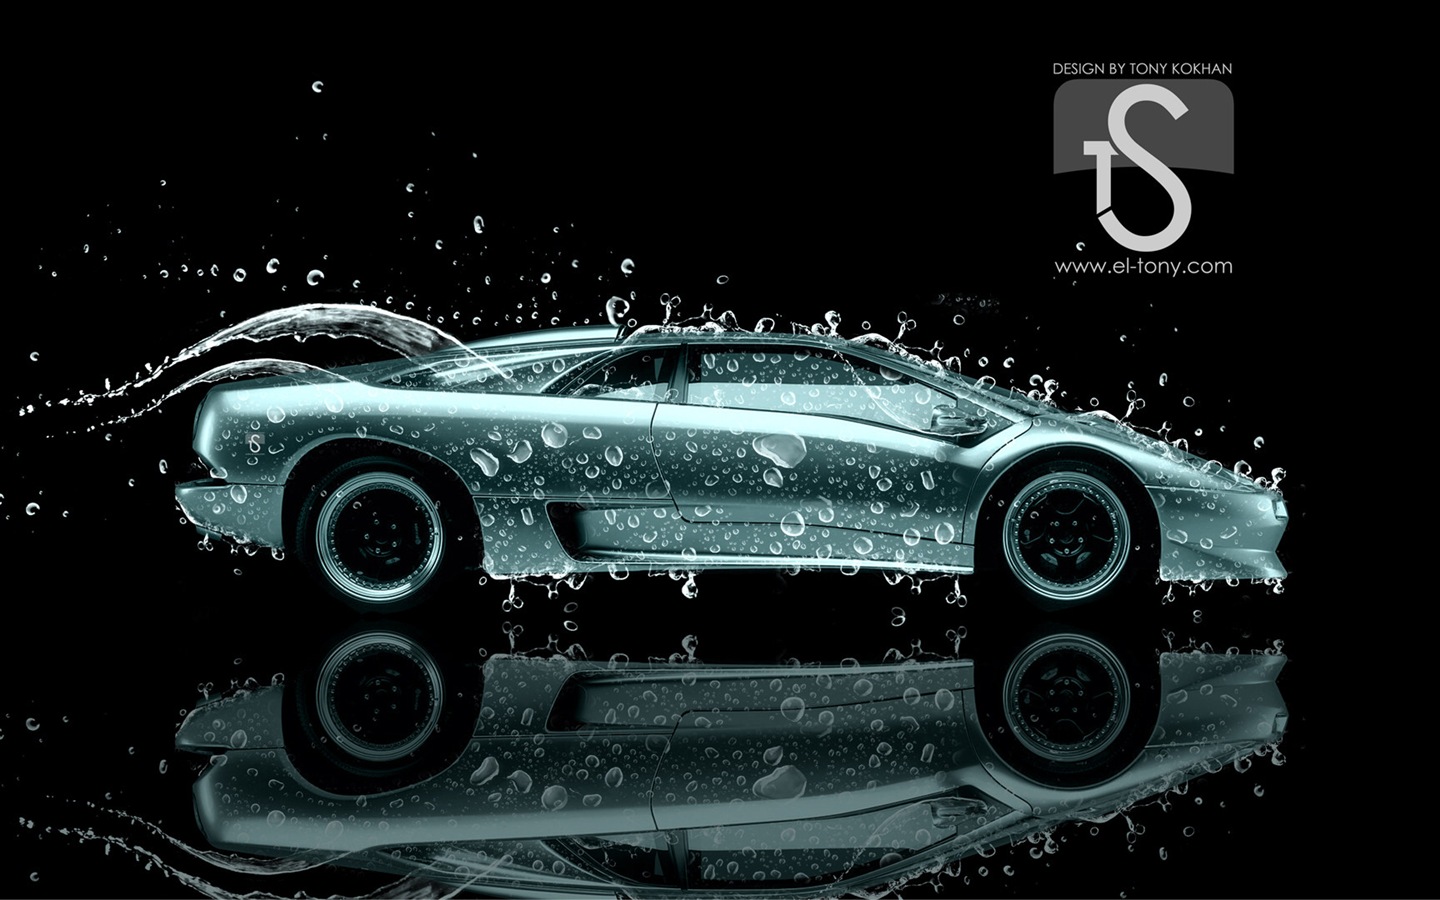 Wassertropfen spritzen, schönes Auto kreative Design Tapeten #27 - 1440x900